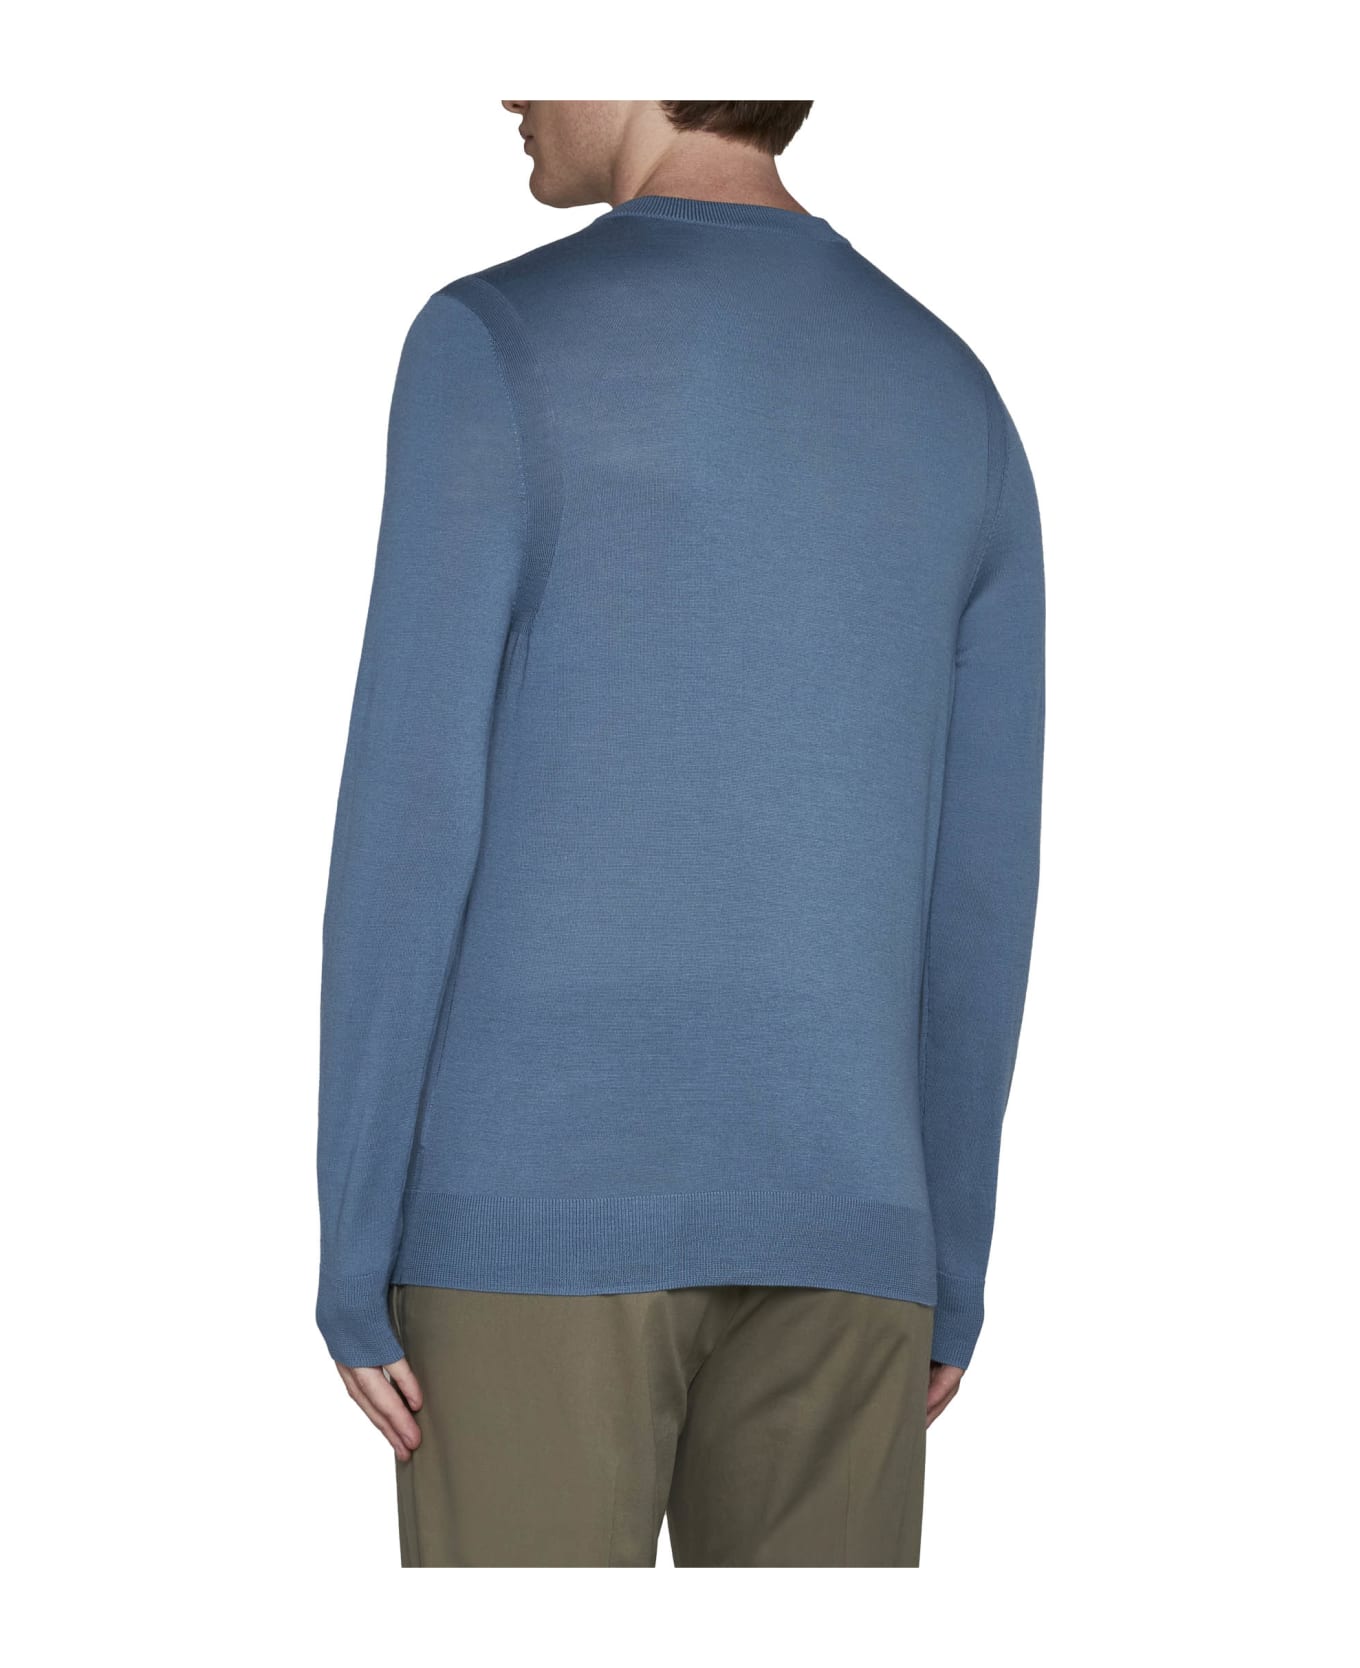 Paul Smith Sweater With Logo - Ptblu